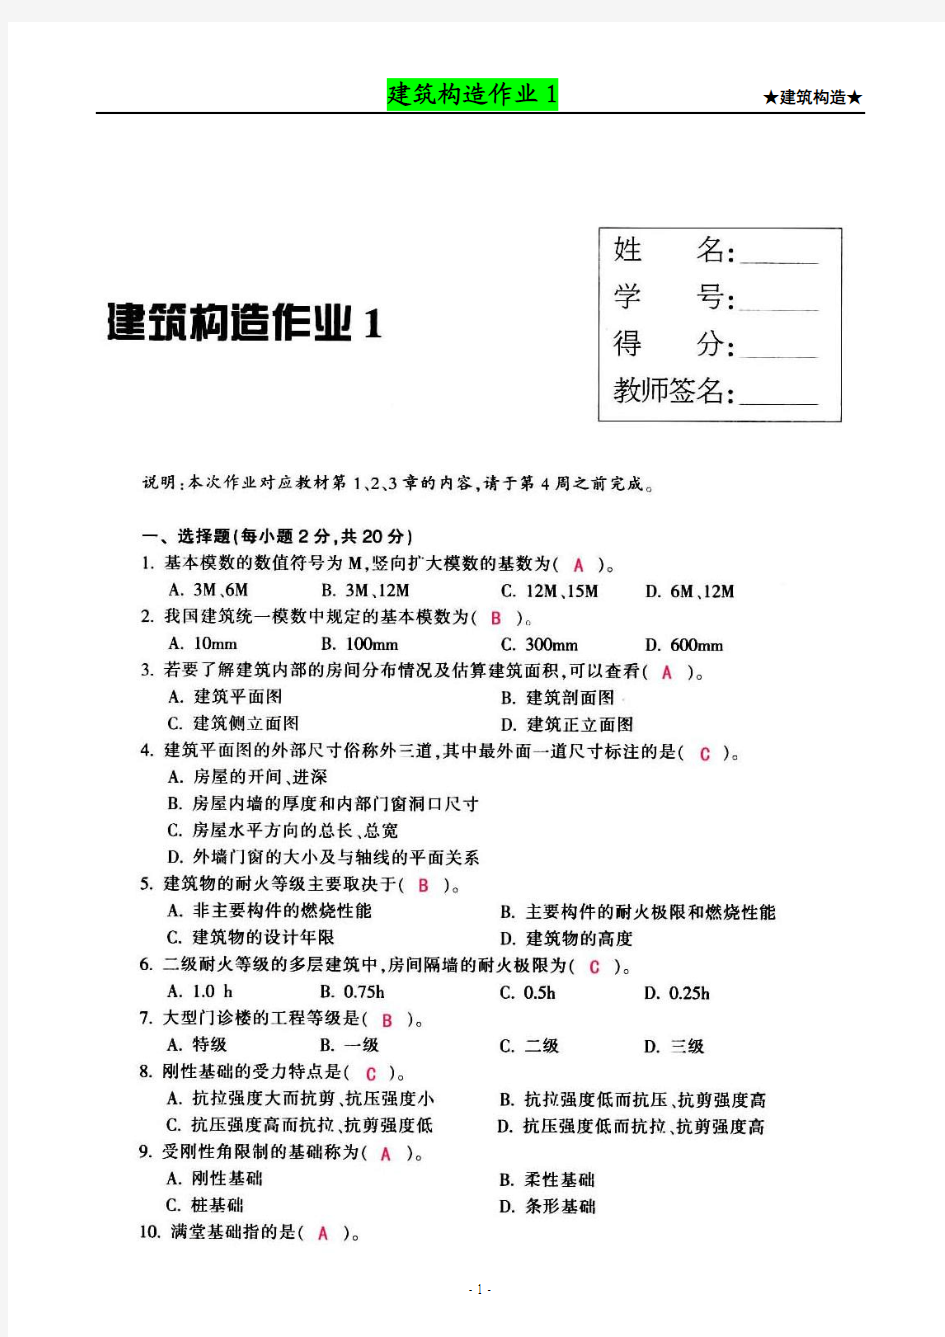 【建筑构造作业】形成性考核作业册答案(1-4)[1]